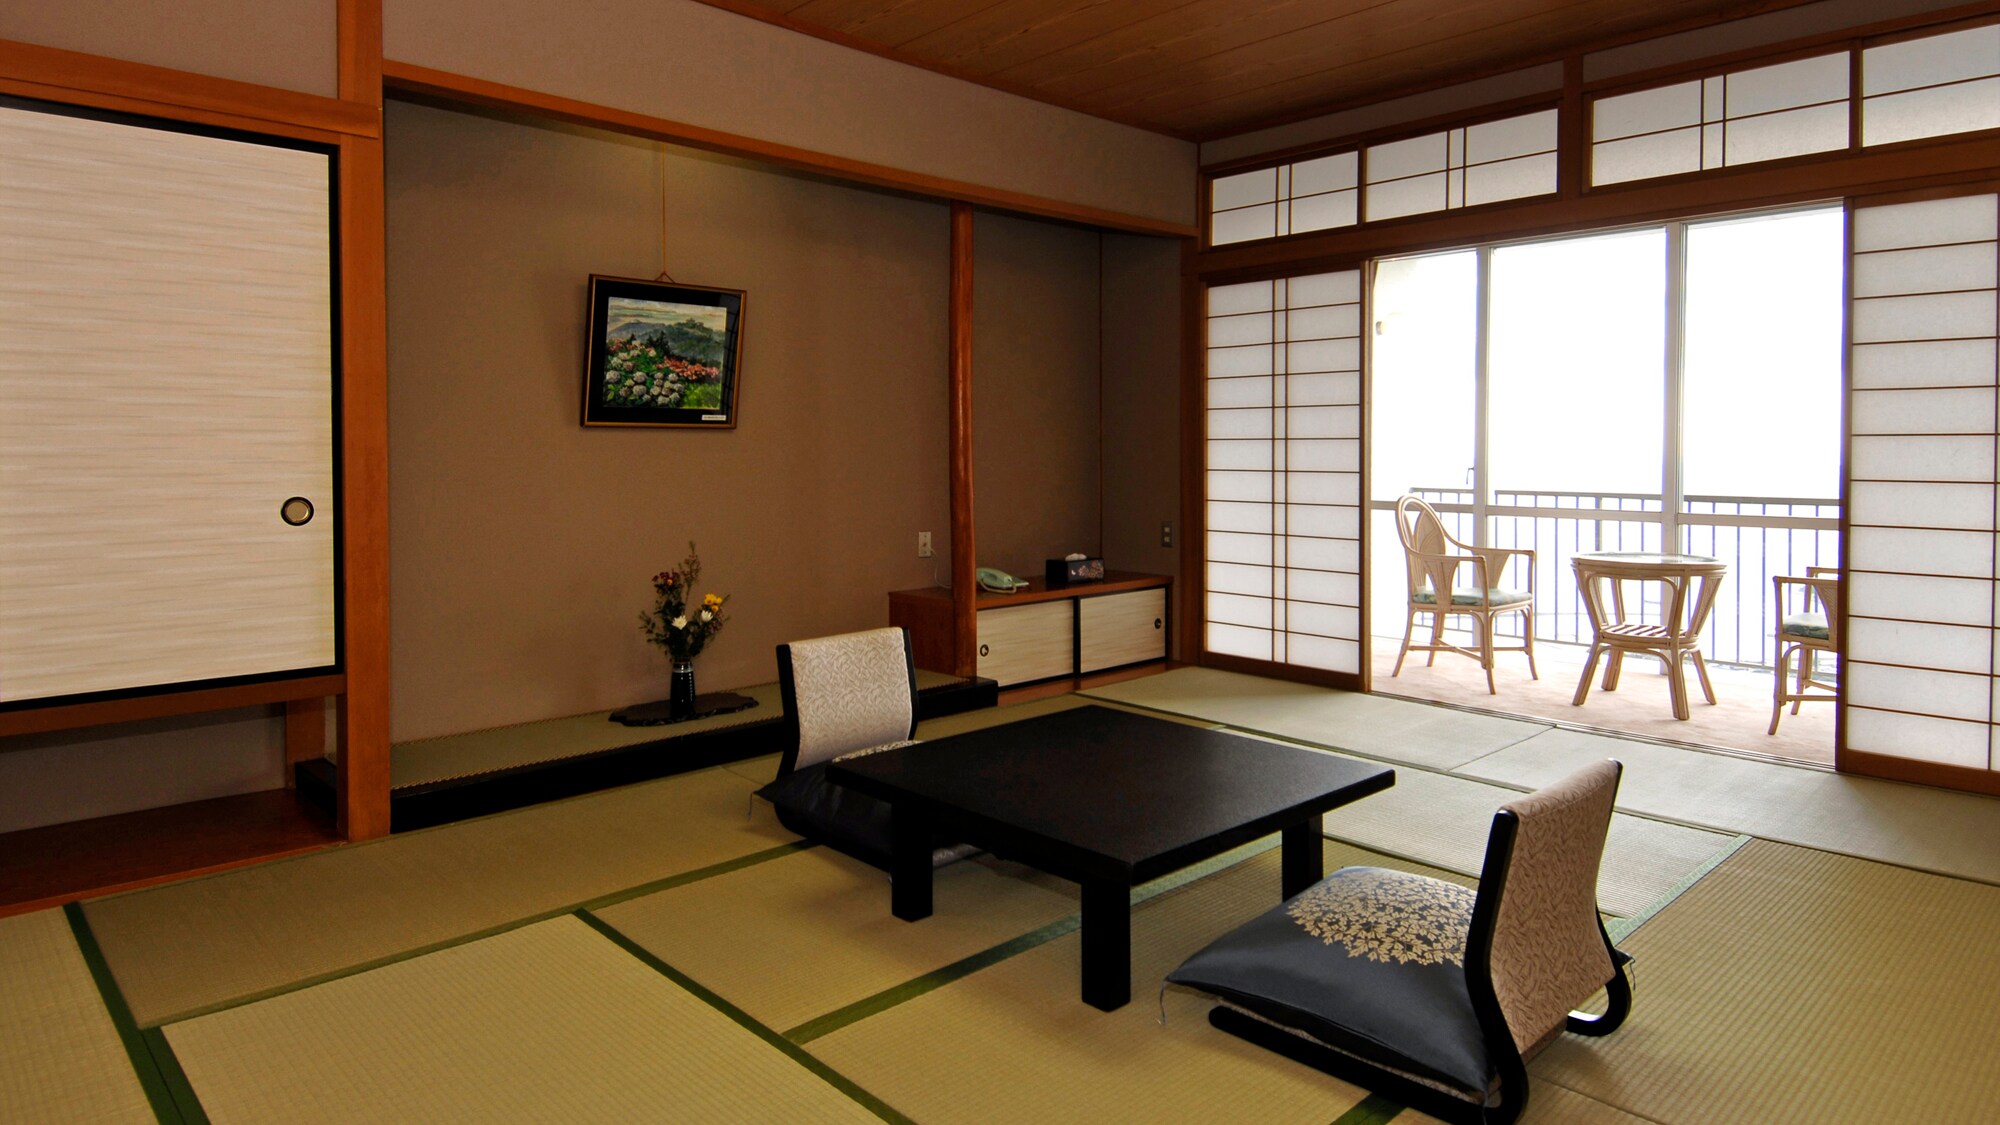 ◆[ห้องสไตล์ญี่ปุ่นขนาด 12 เสื่อทาทามิปลอดบุหรี่] ห้องที่มีวิวทะเล มีอ่างอาบน้ำและห้องสุขาเครื่องซักผ้า